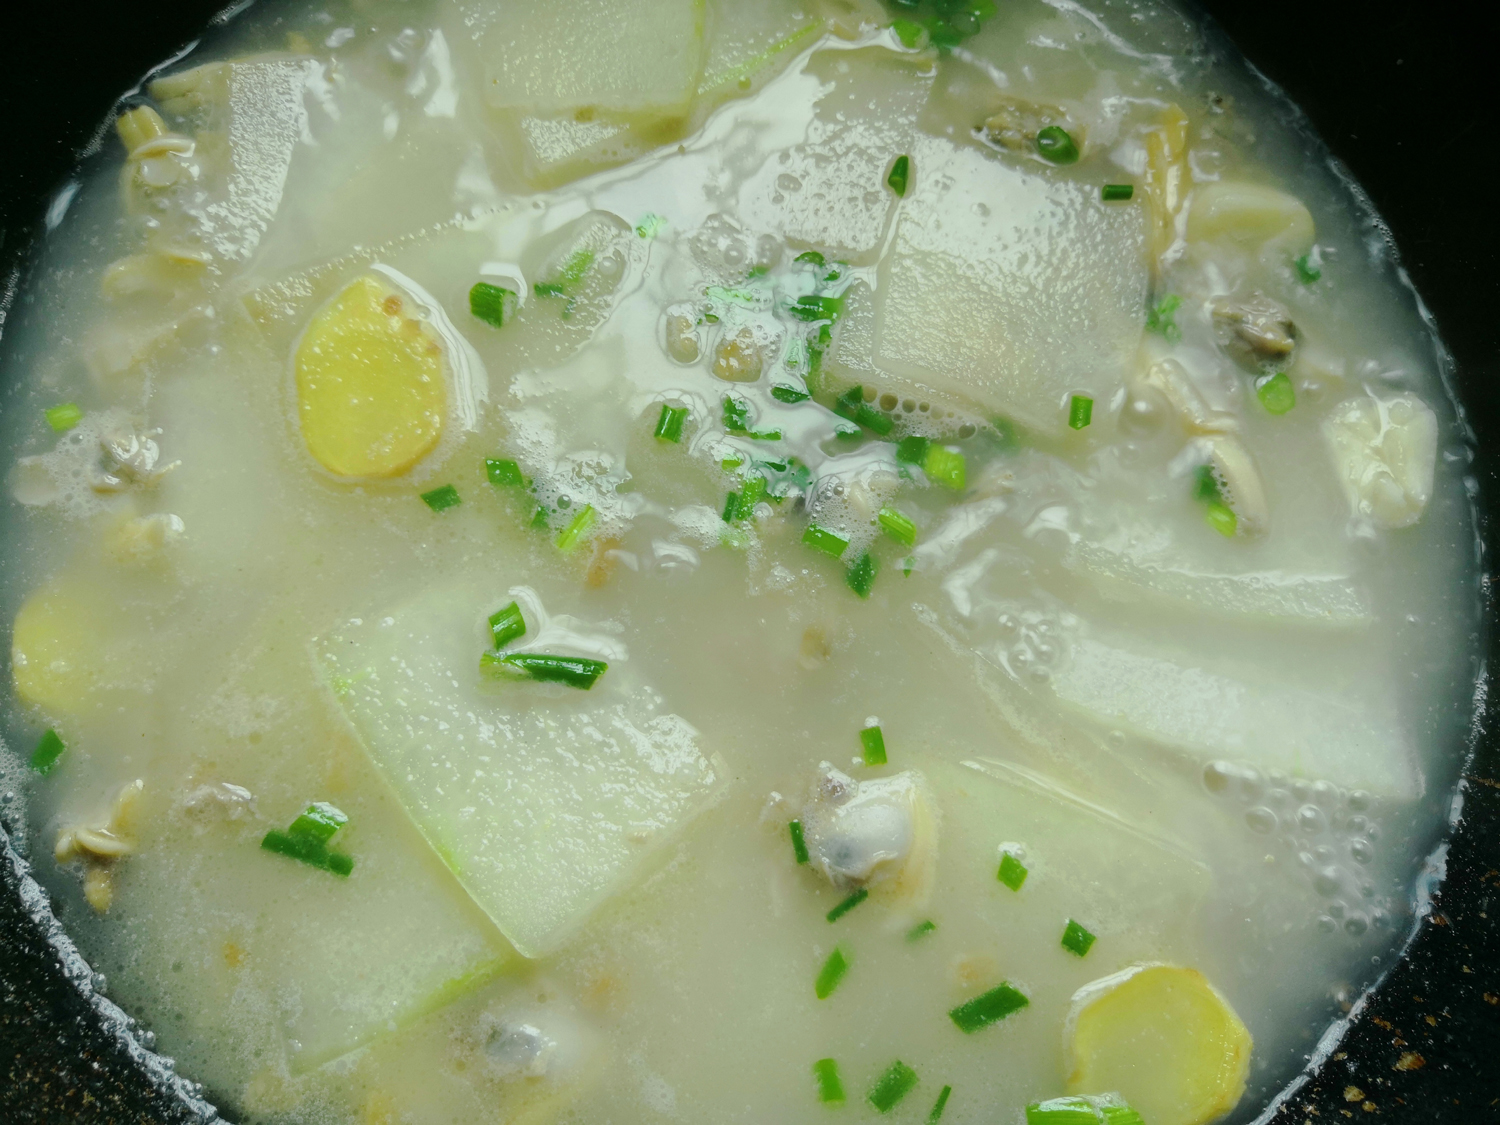 原创超级鲜甜的海鲜冬瓜汤,在炎热的夏天喝一碗,满口都是鲜鲜的幸福